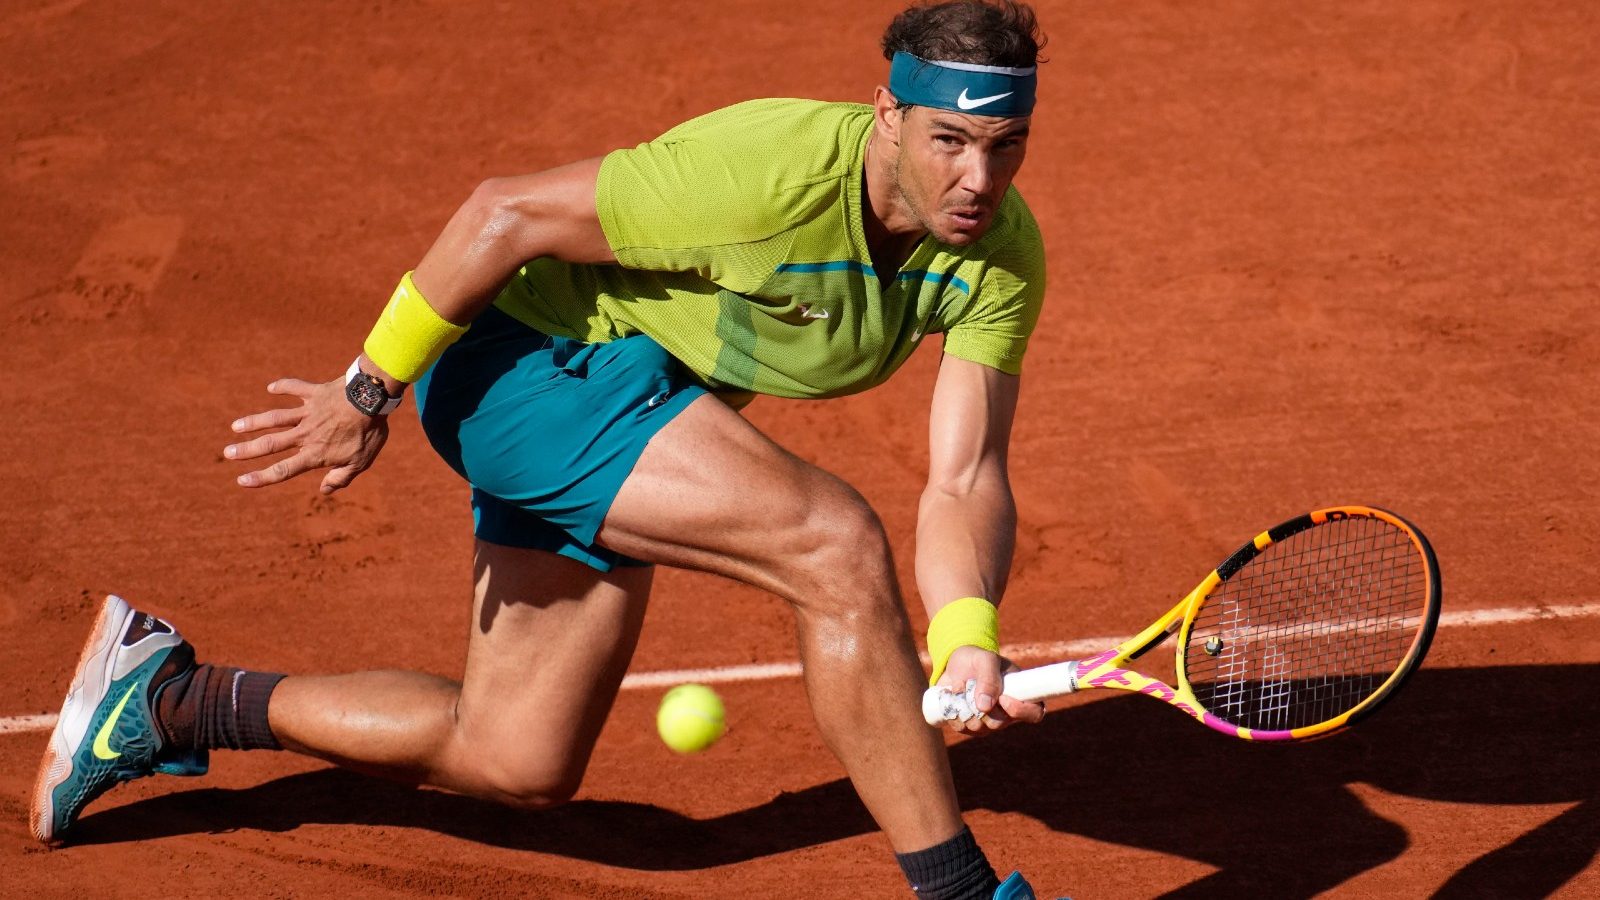 primavera eficientemente Basura French Open: Rafael Nadal Sails Into Round 4 - News18